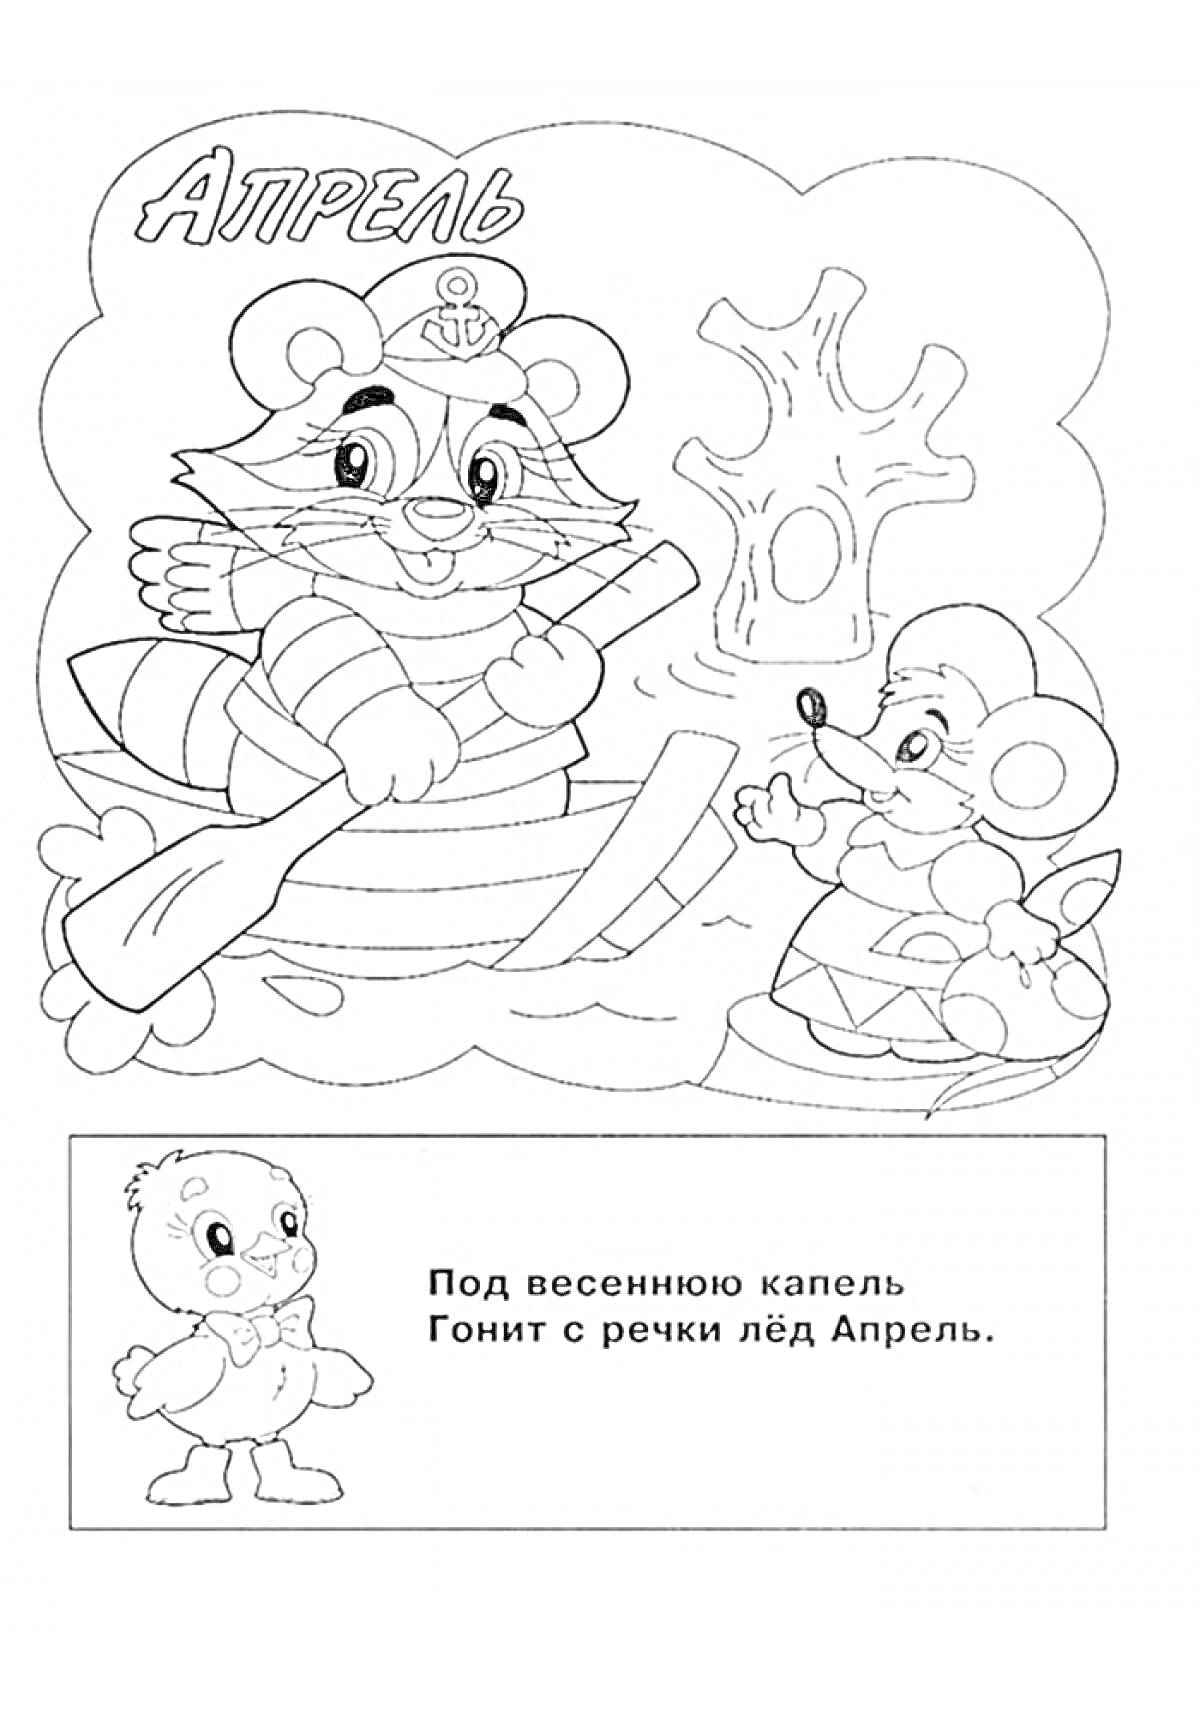 Раскраска апрельская сцена с двумя персонажами — енот на плоту с веслом и мышь на берегу, дерево, вода, уточка и стихотворение про апрель внизу